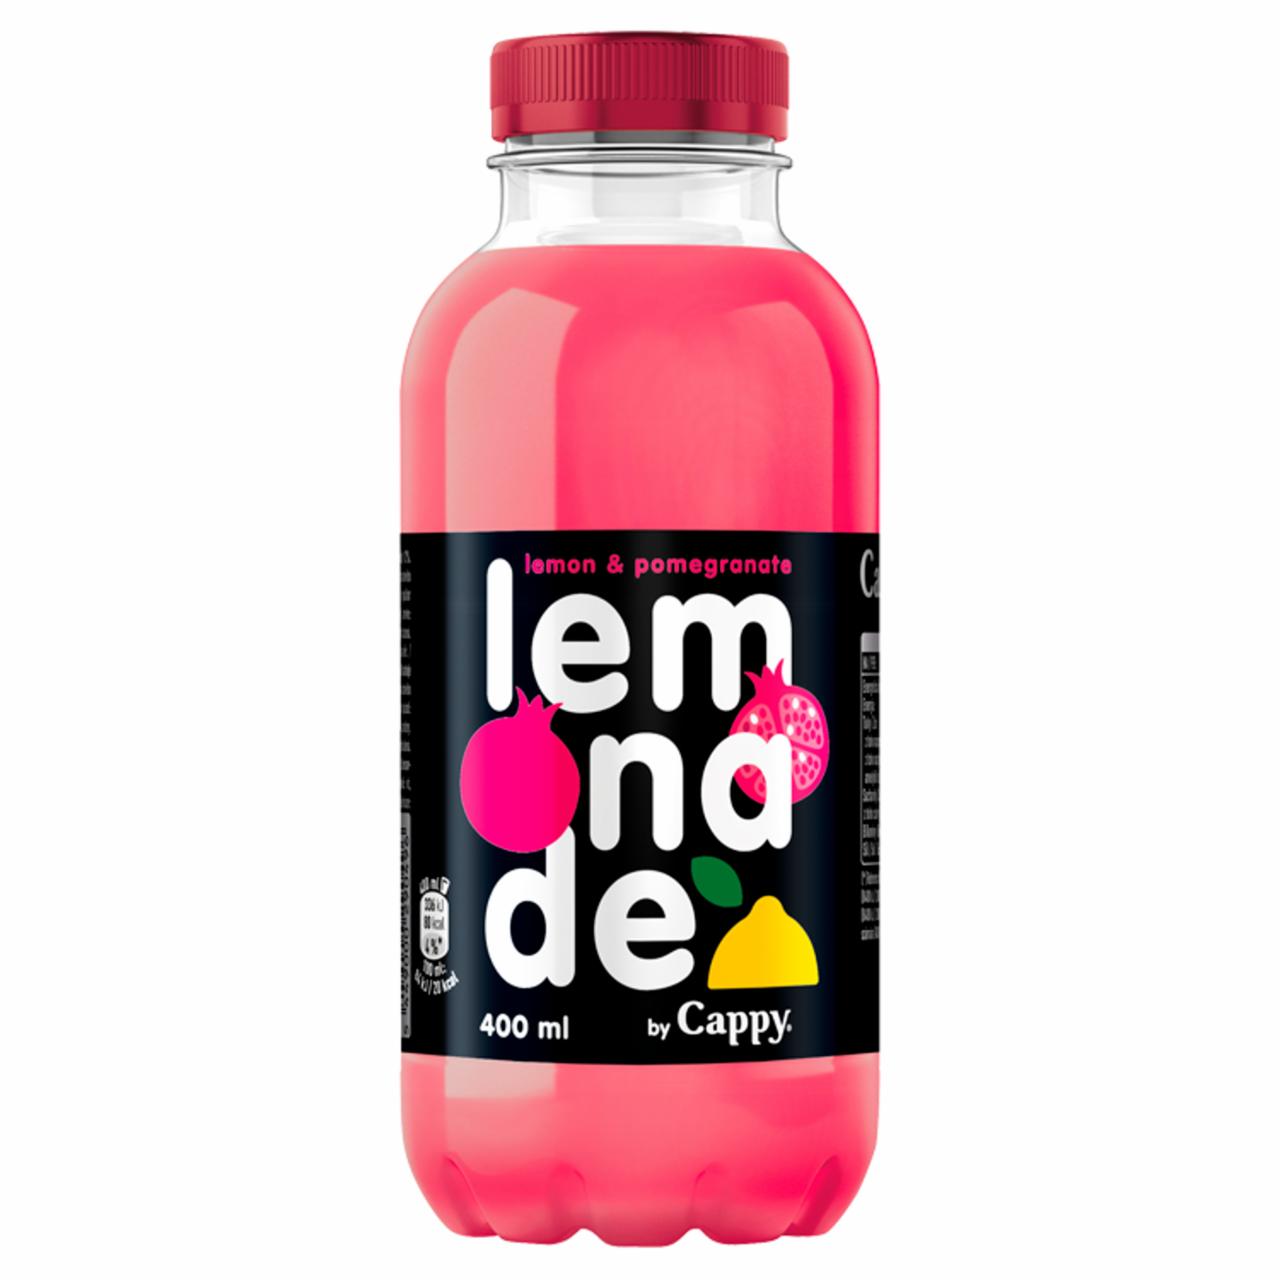 Képek - Cappy Lemonade szénsavmentes, citrom-gránátalma ízű üdítőital cukorral és édesítőszerrel 400 ml